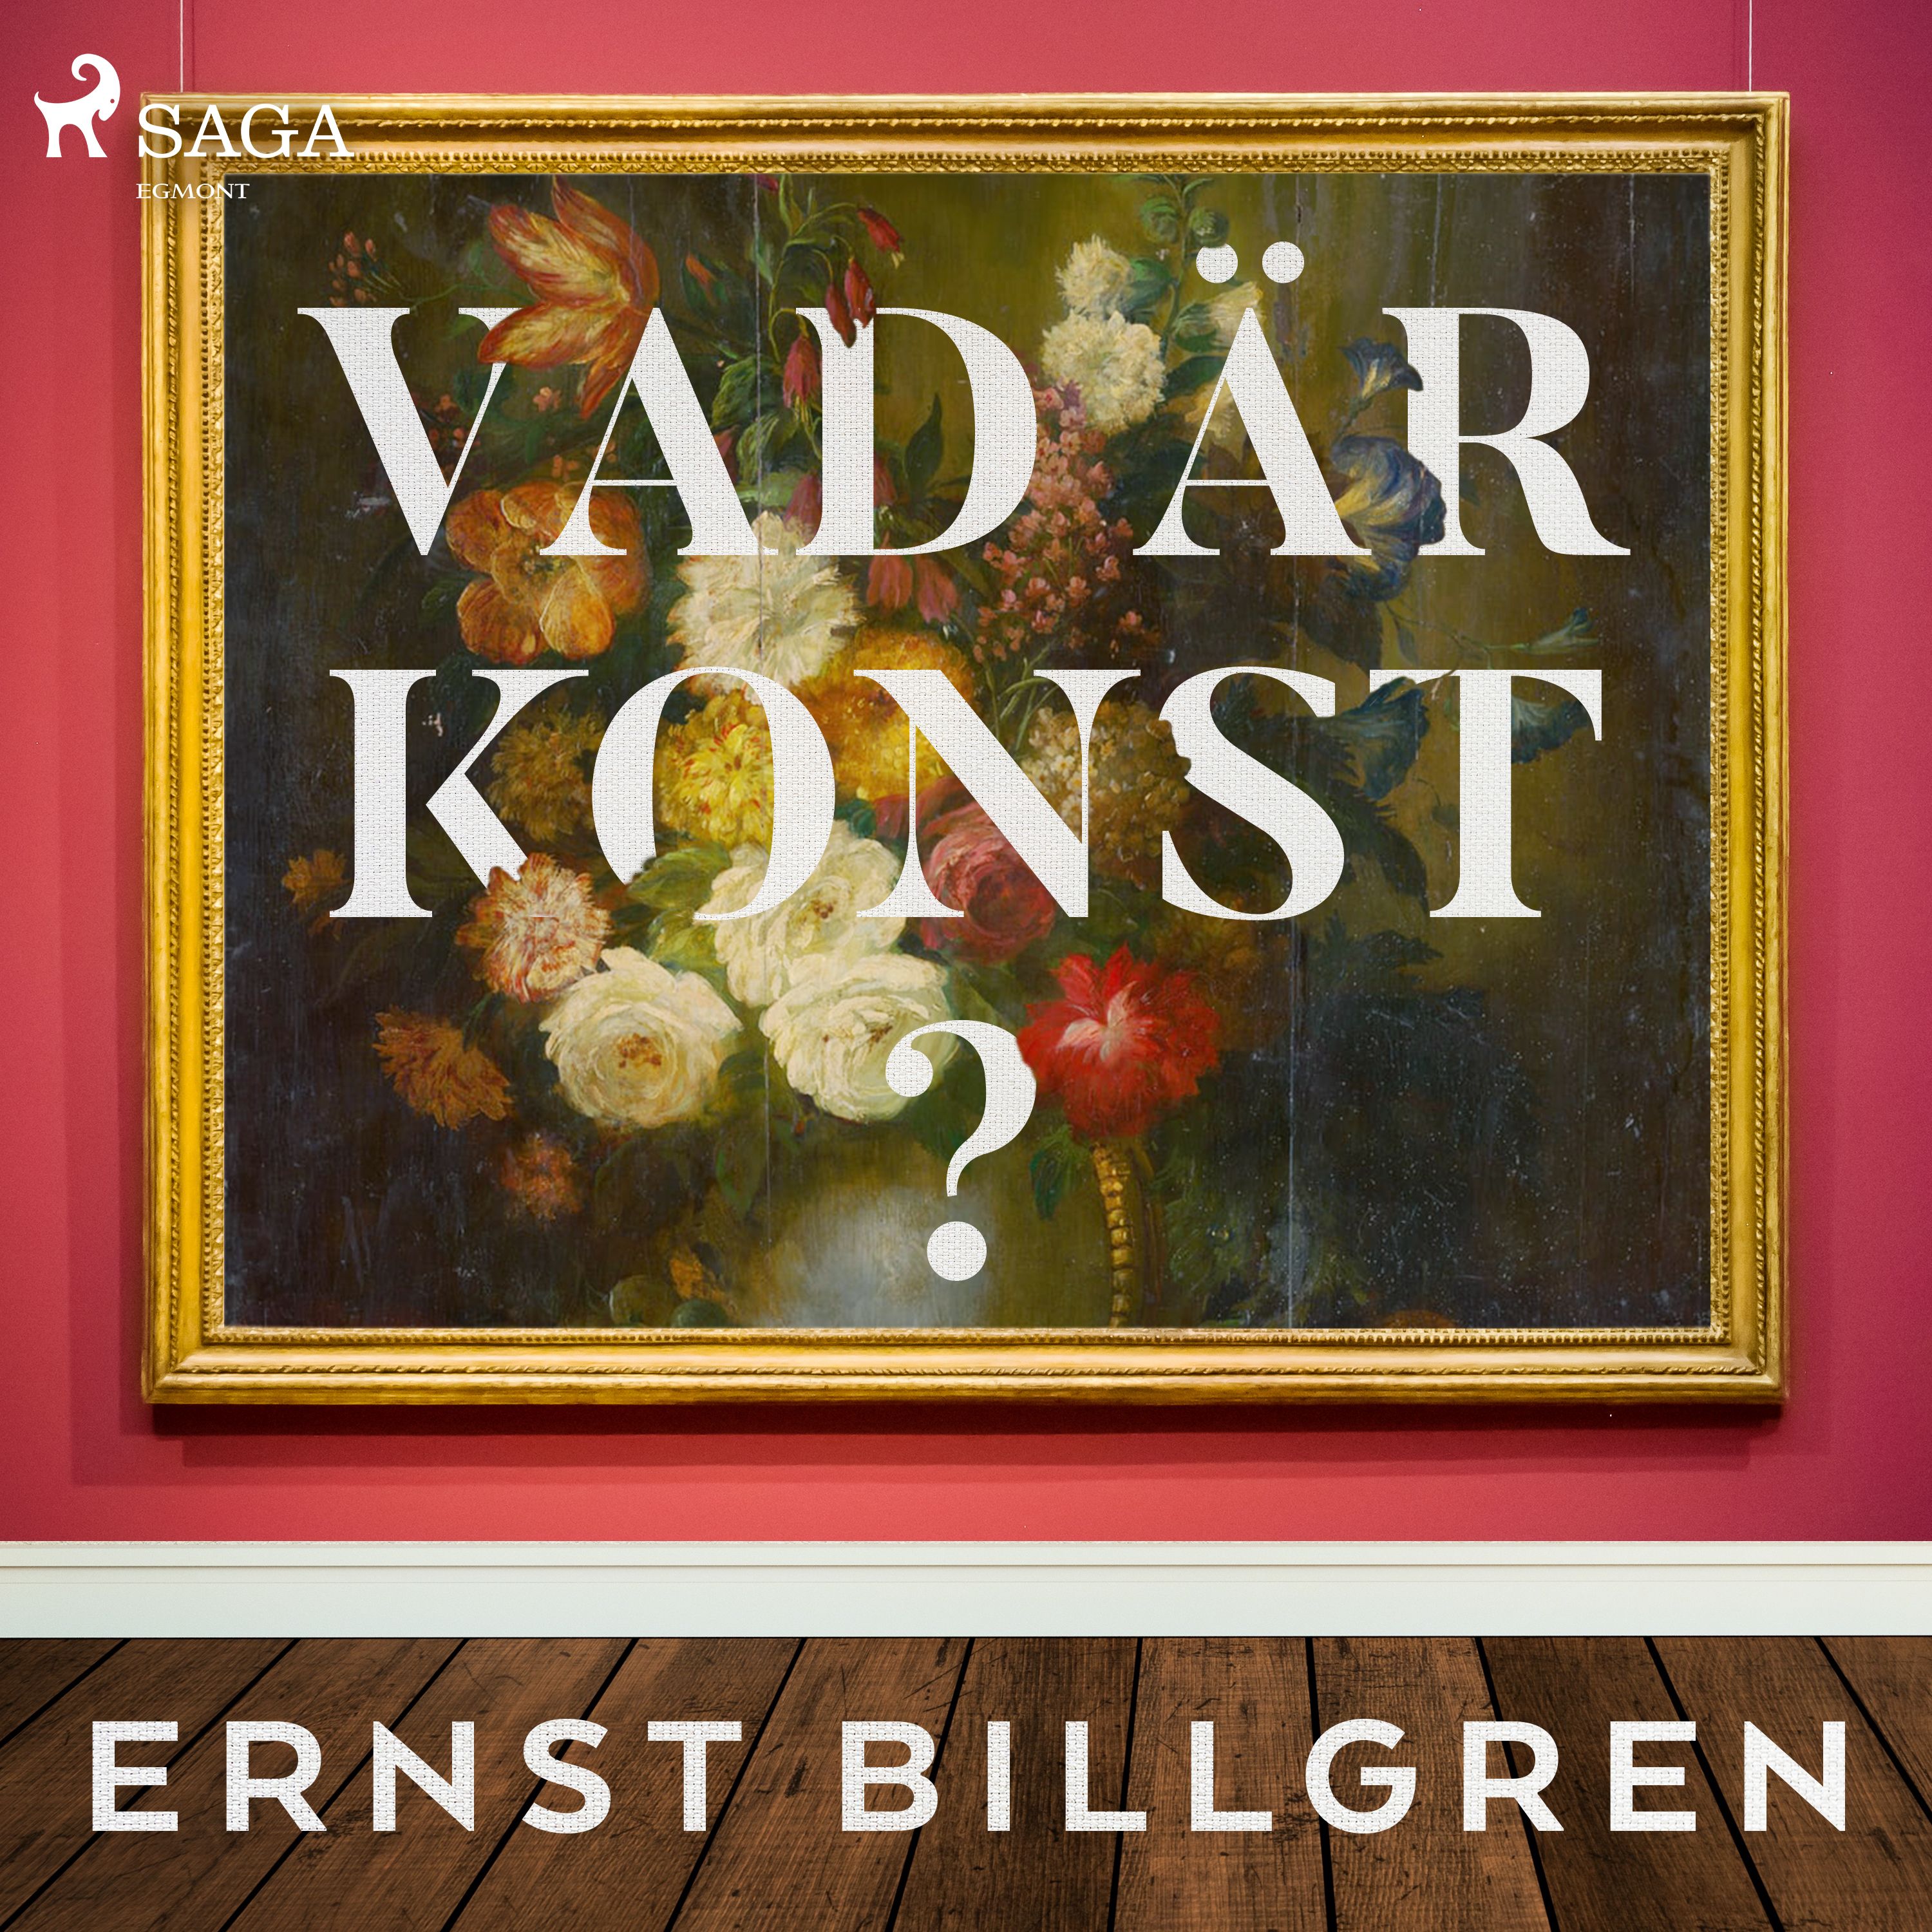 Vad är konst?, audiobook by Ernst Billgren